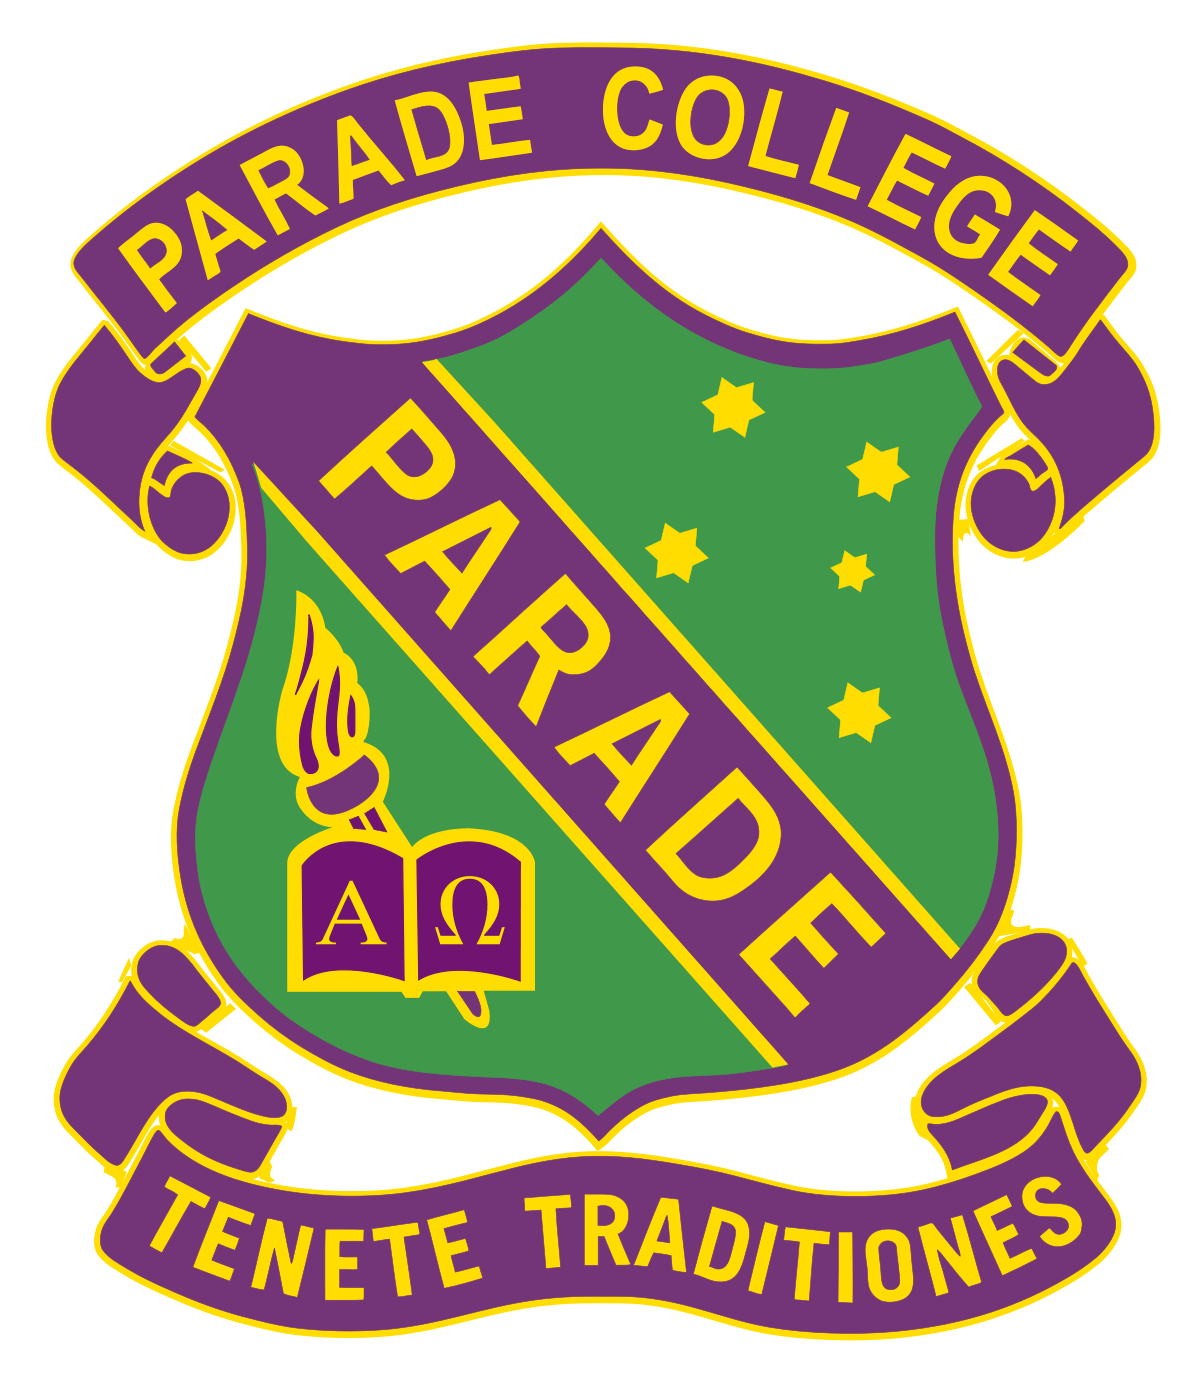 Parade Logo - Parade College